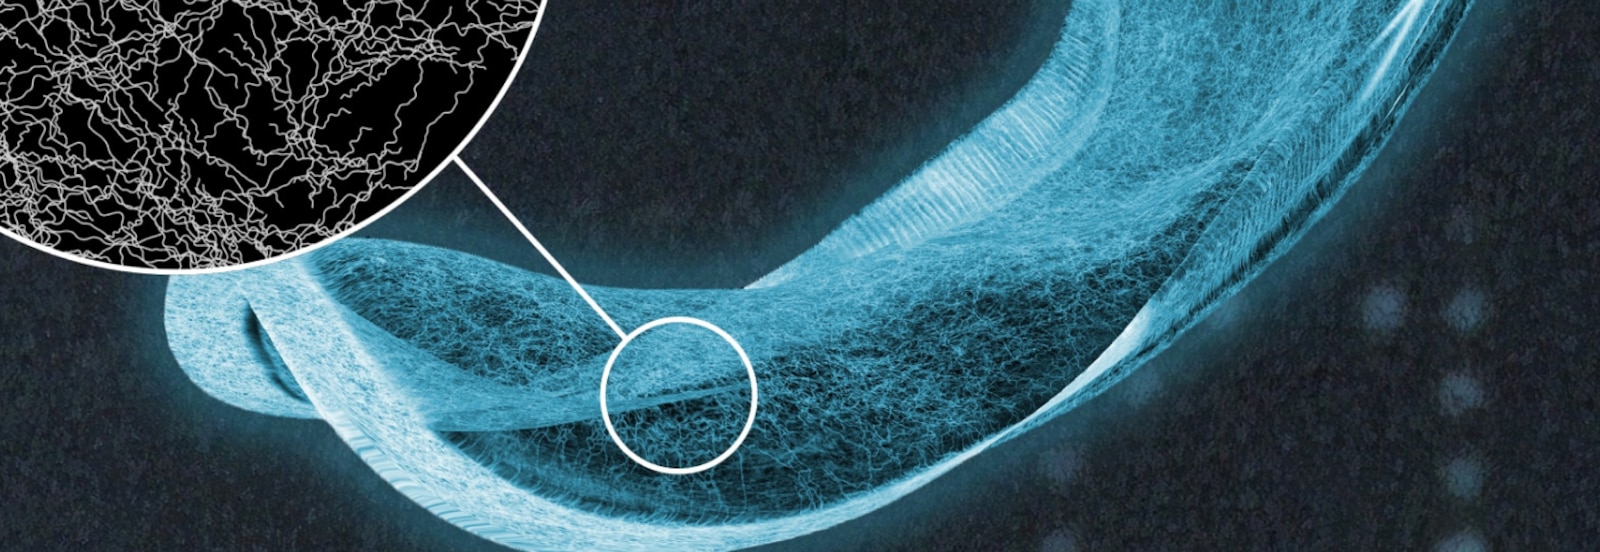 TENA吸収パッドのX線写真。吸収コアの繊維の詳細が見える。